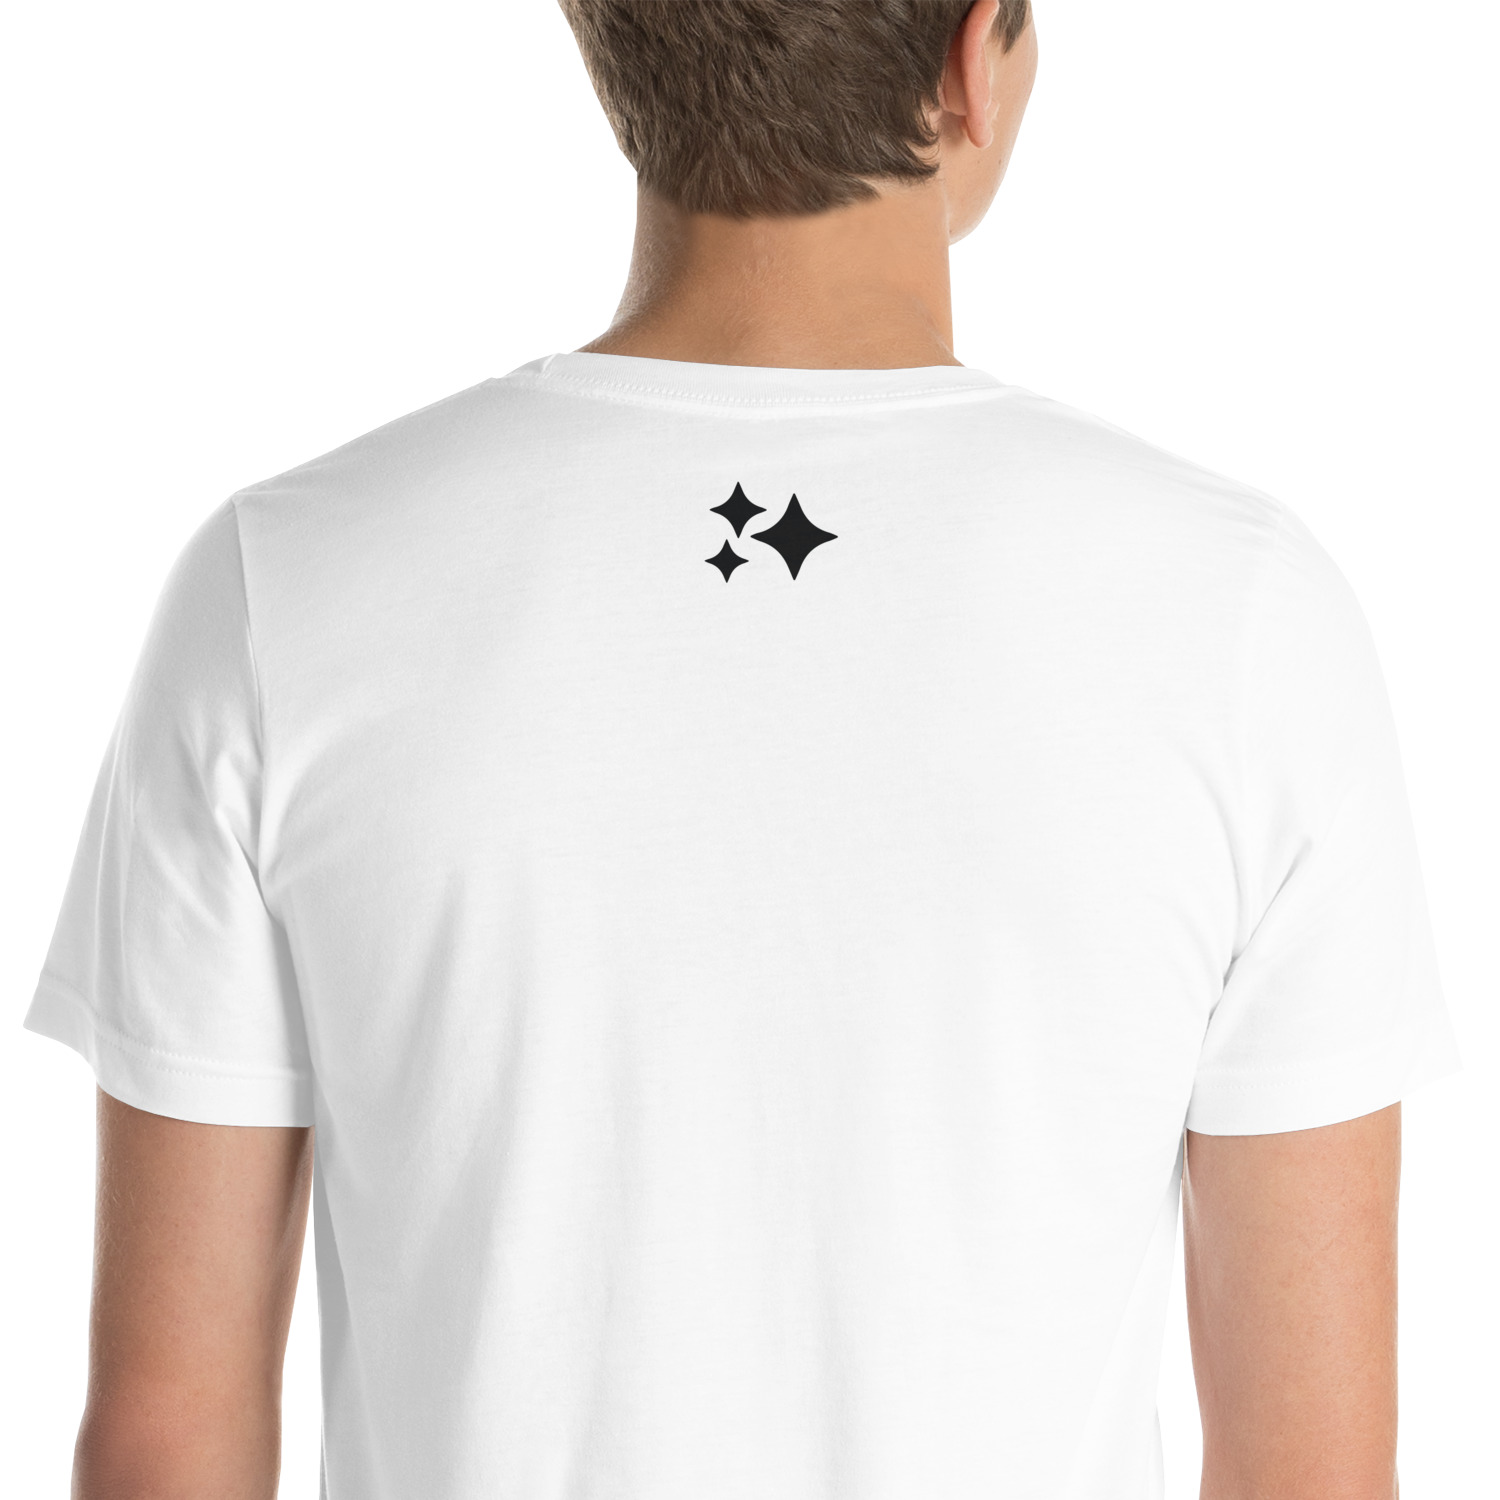 unisex-staple-t-shirt-white-zoomed-in-6323277db5cc2.jpg